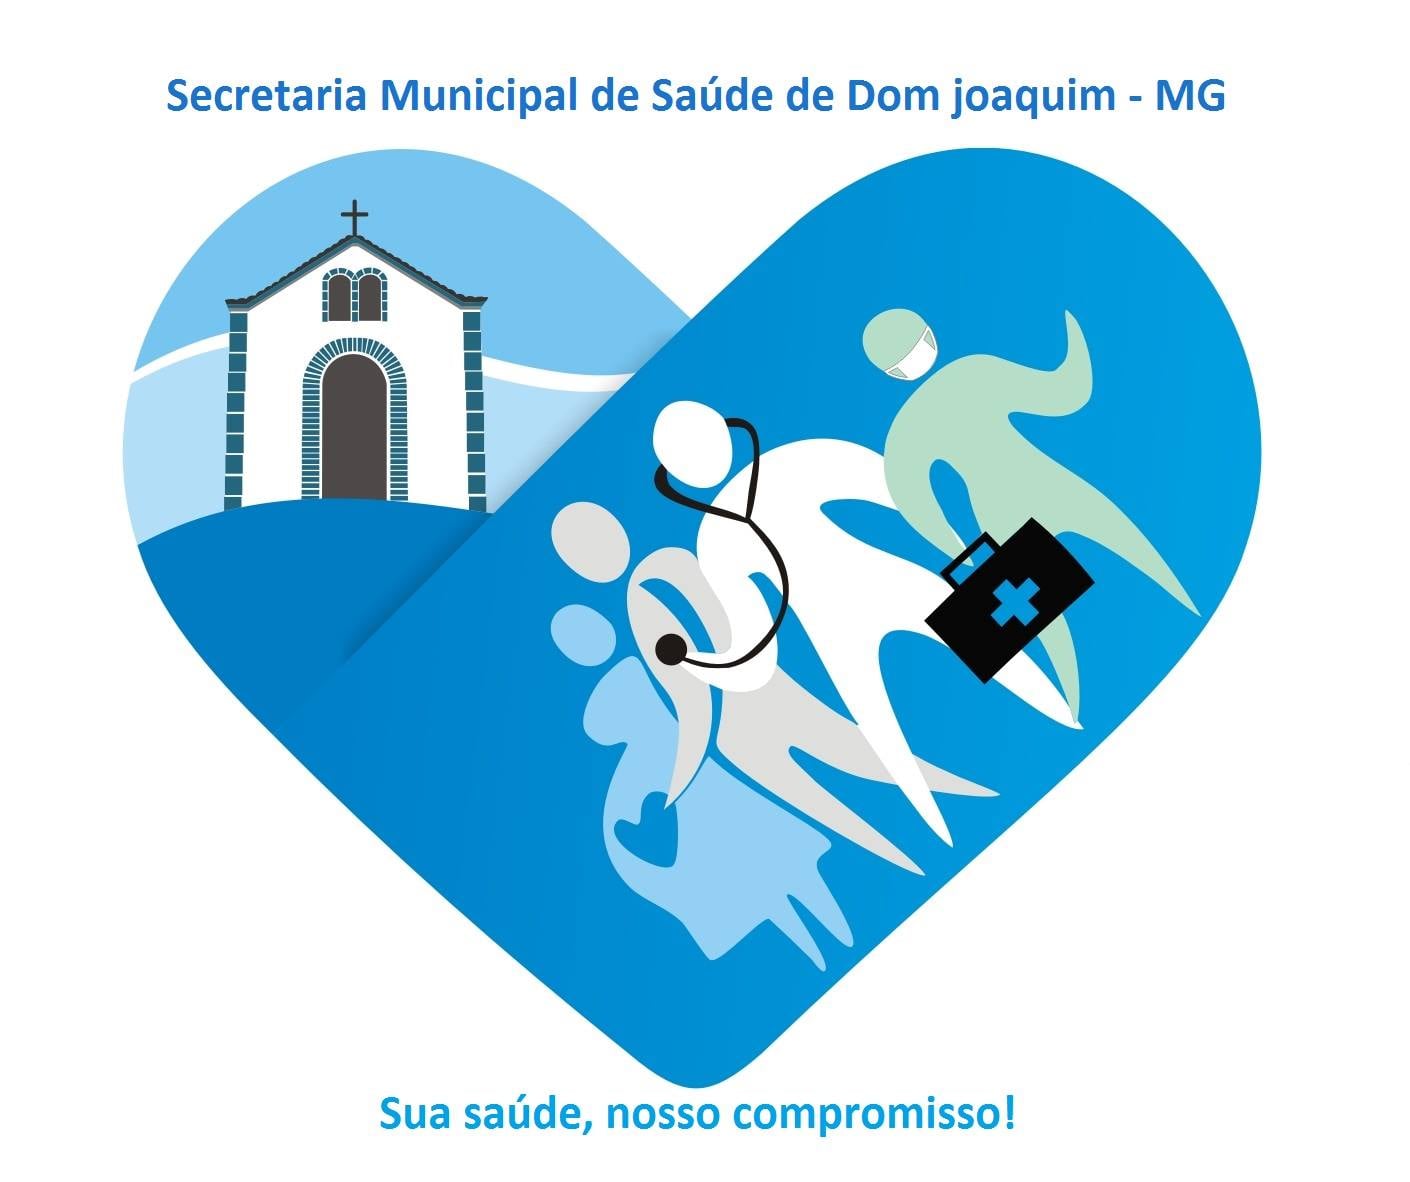 You are currently viewing Link de acesso ao facebook da Secretaria Municipal de Saúde